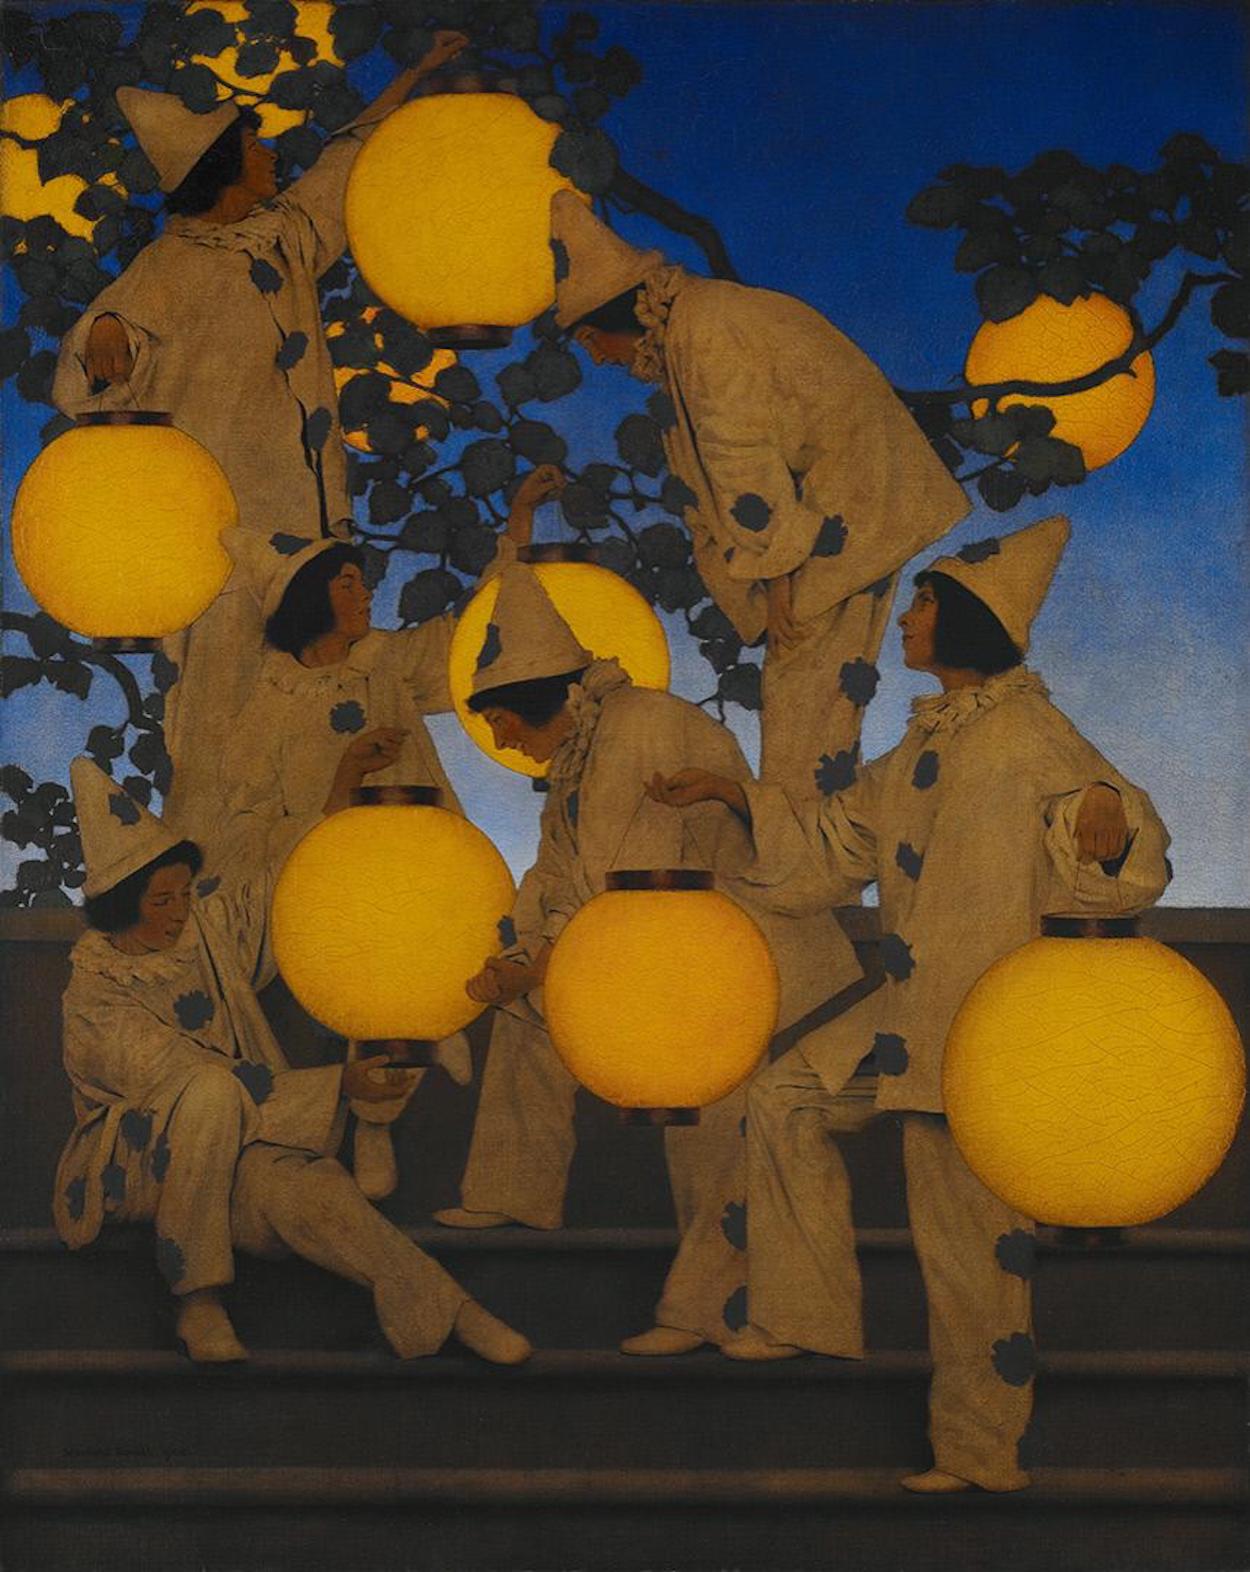 Les Porteurs de lanternes by Maxfield Parrish - c. 1908 Crystal Bridges Museum of American Art